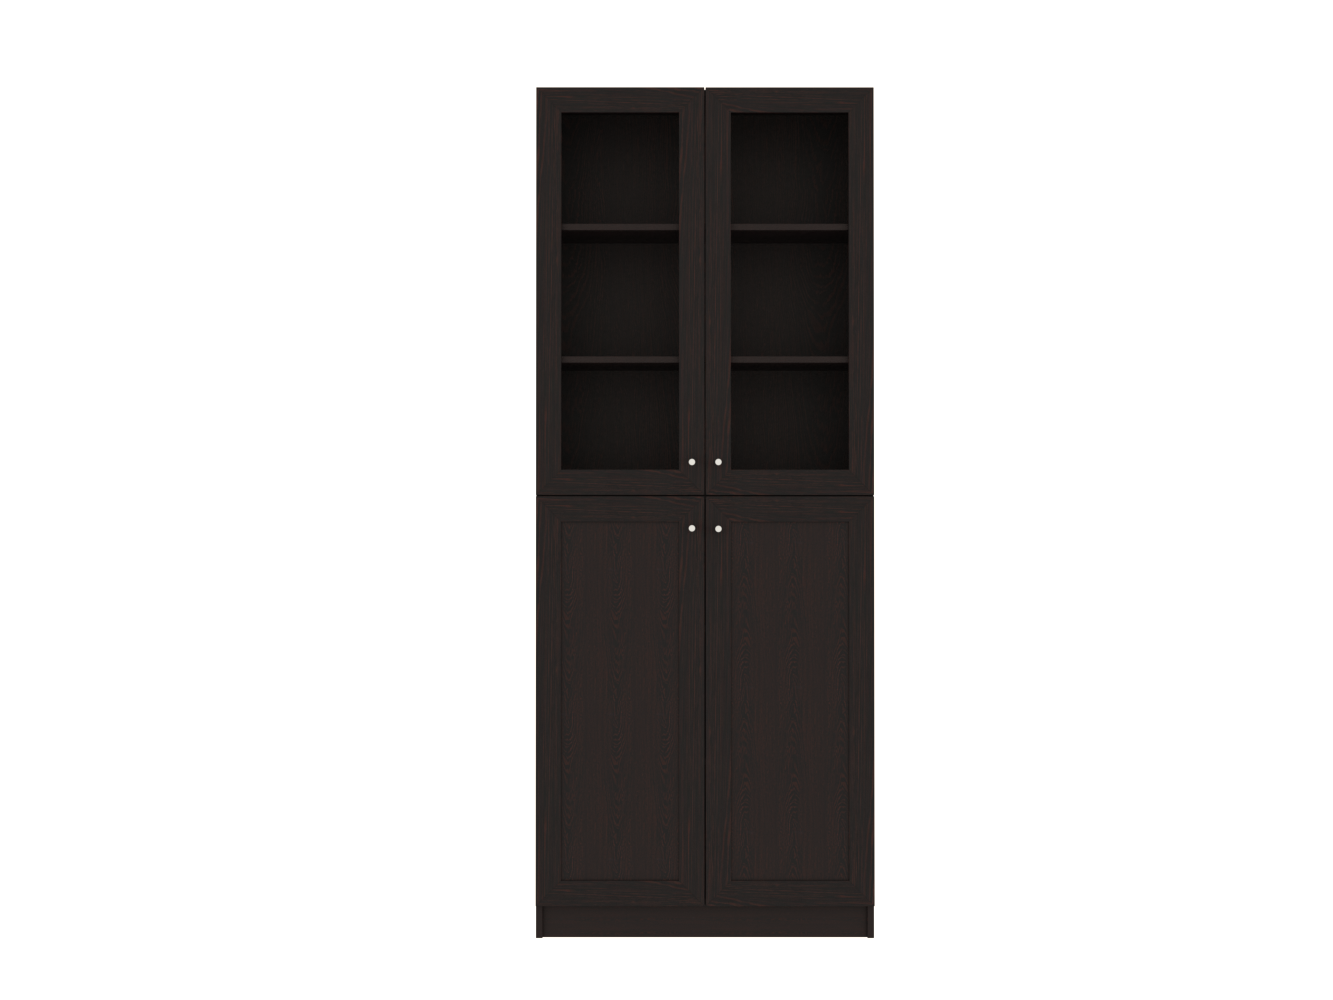  Книжный шкаф Билли 334 brown ИКЕА (IKEA) изображение товара